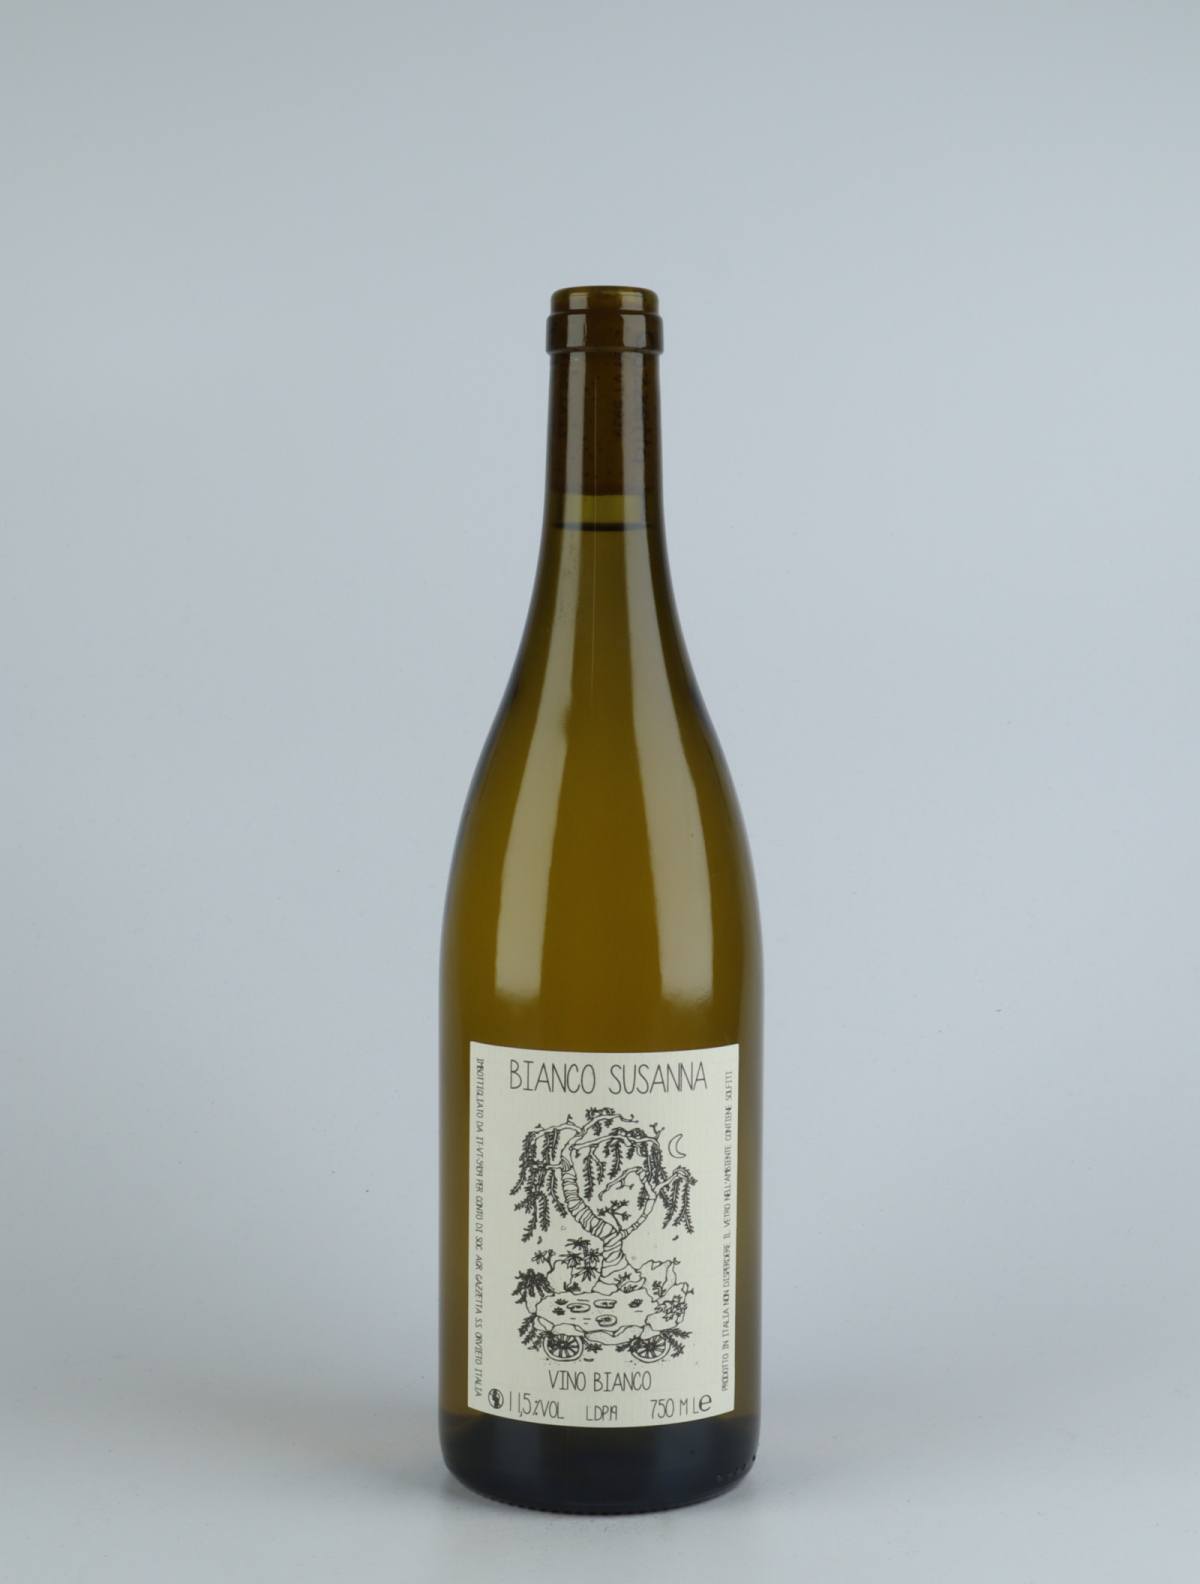 A bottle 2019 Vino Bianco Susanna White wine from Gazzetta, Lazio in Italy